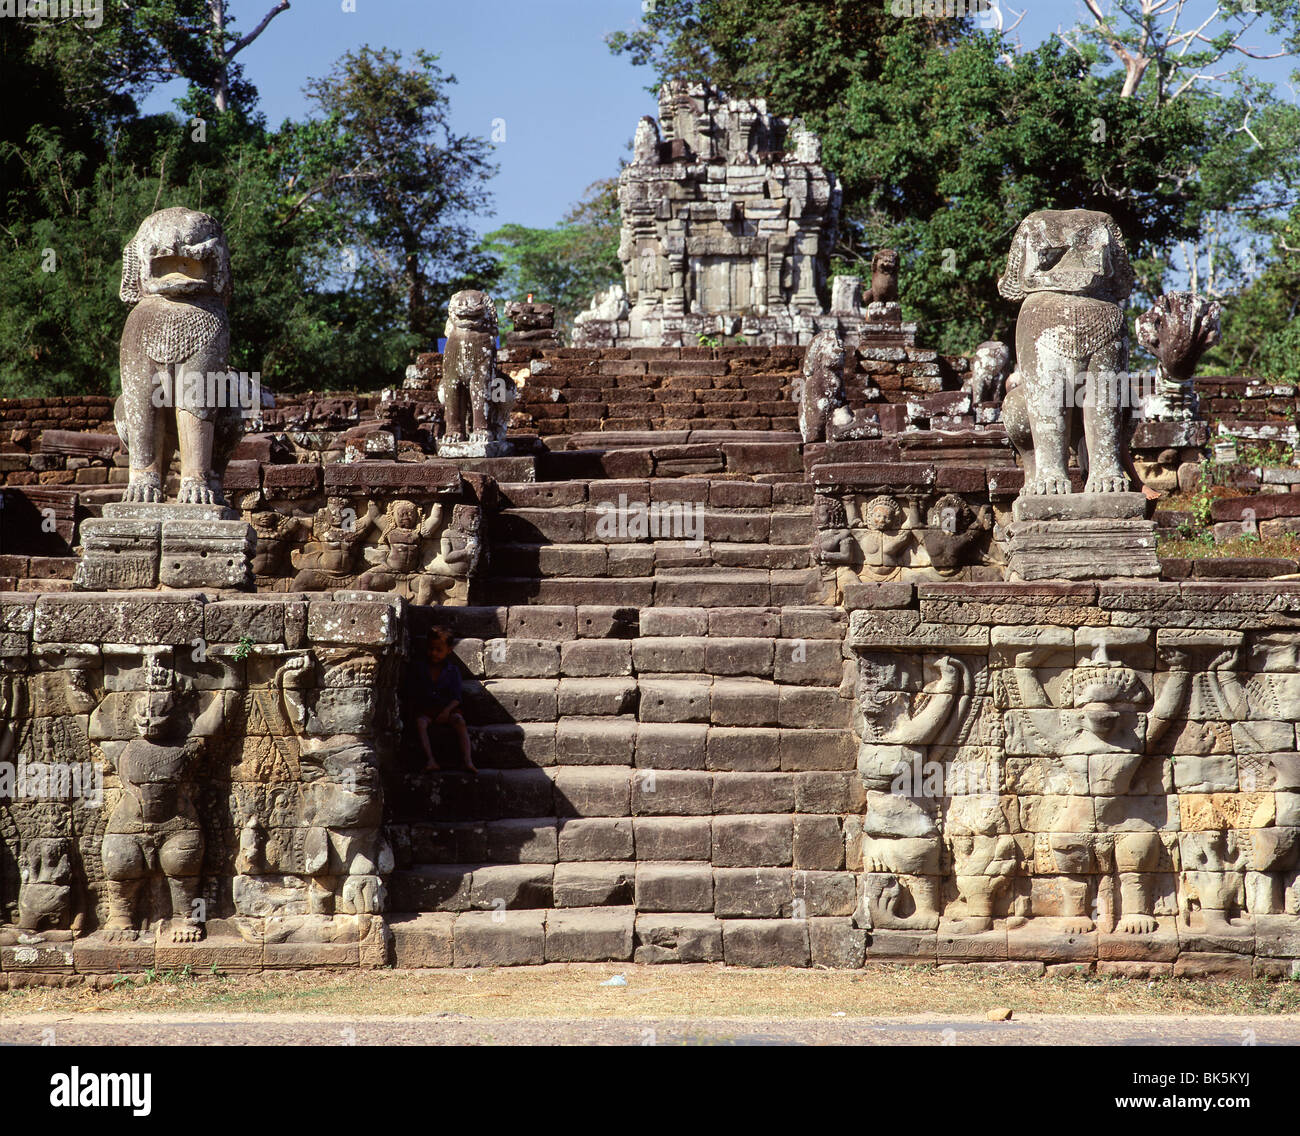 Elefant Terrasse des königlichen Palastes, Angkor Thom, Angkor, UNESCO World Heritage Site, Kambodscha, Indochina, Südostasien, Asien Stockfoto